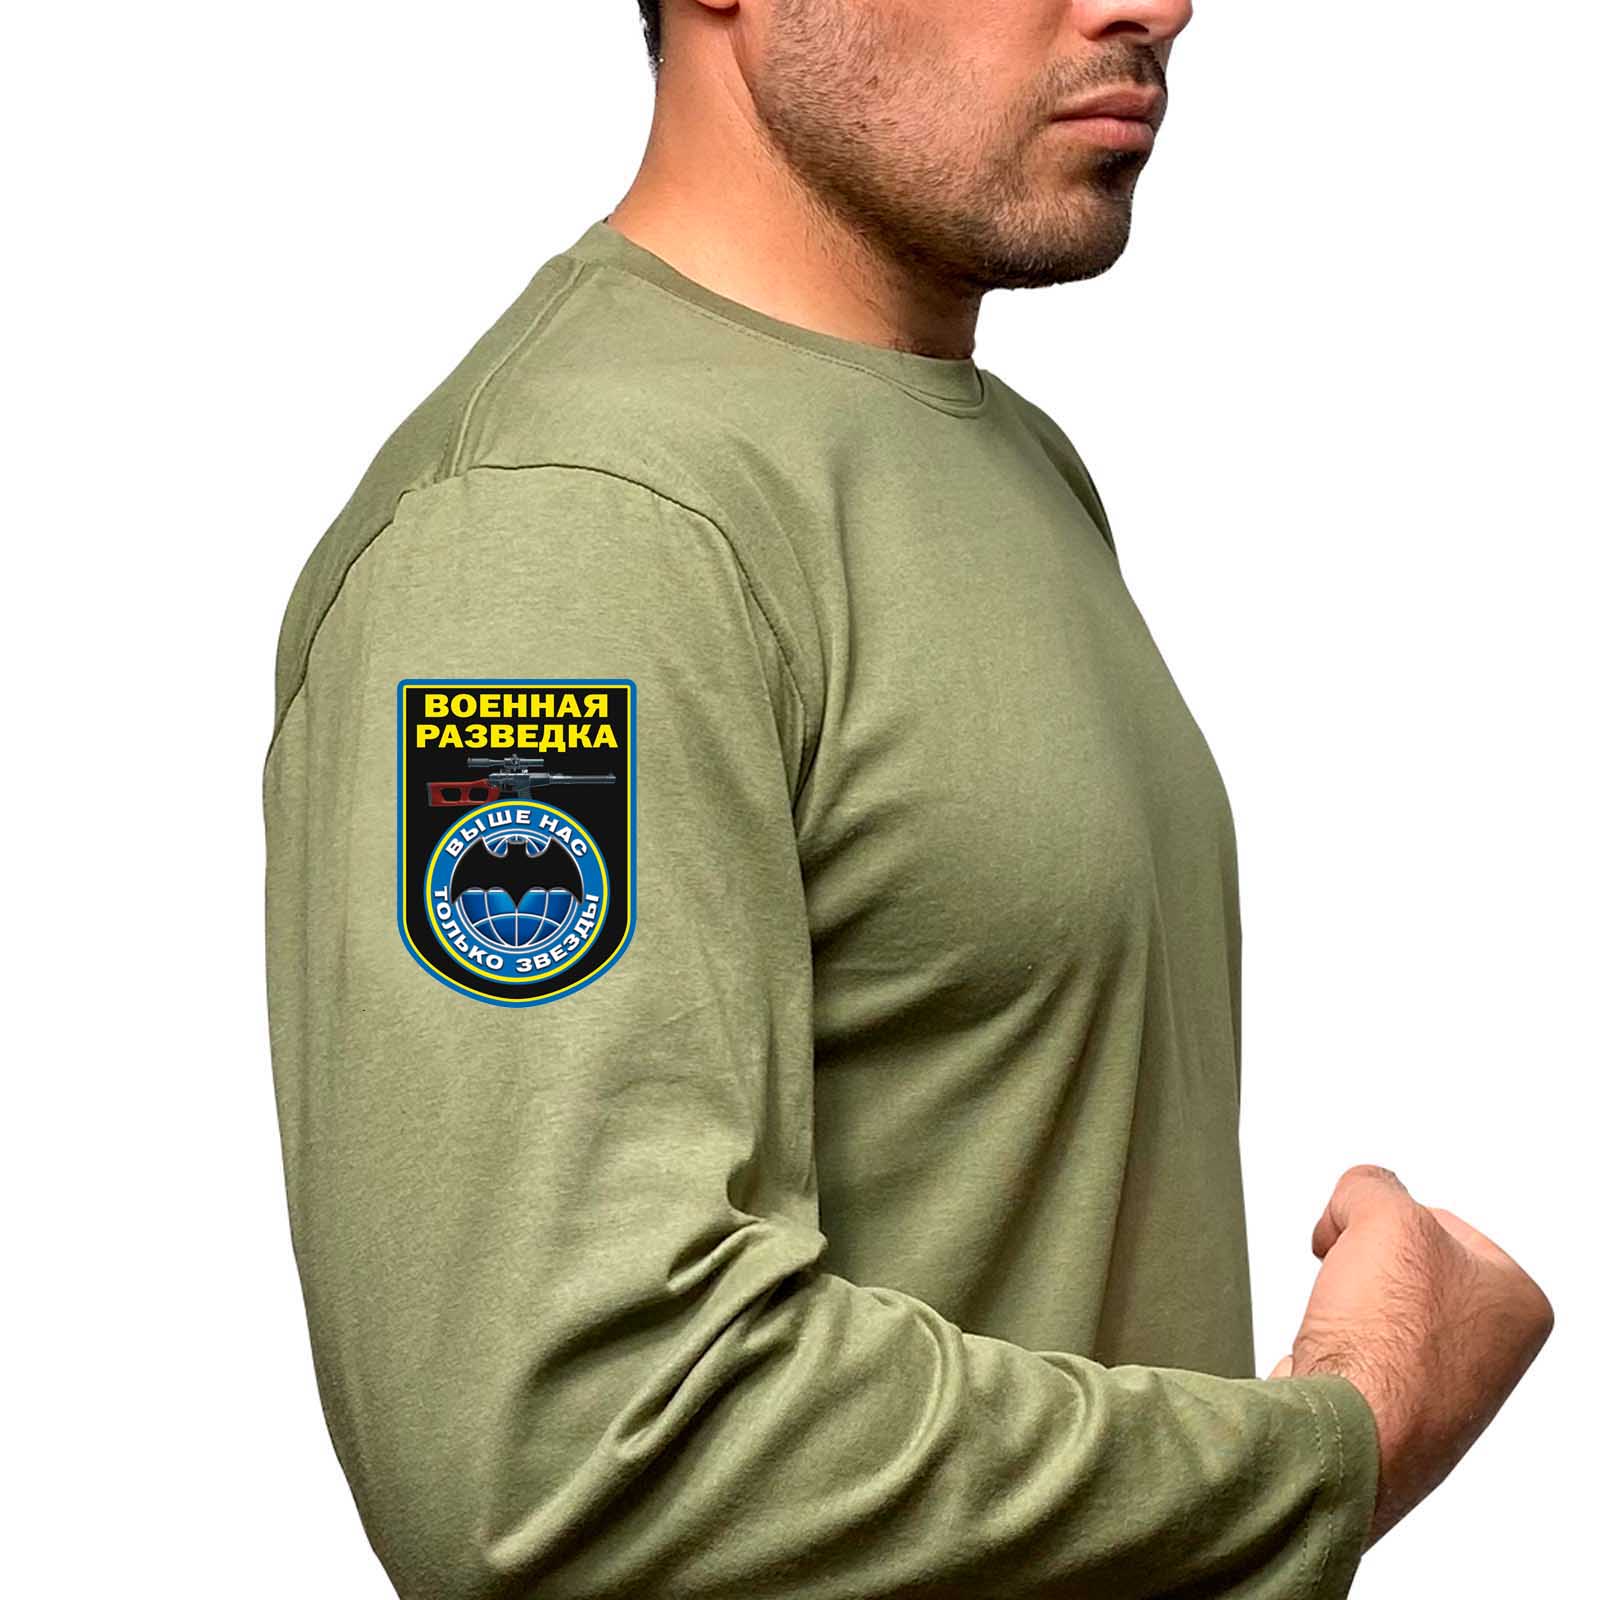 Купить мужскую футболку с длинным рукавом с термоаппликацией Военная разведка выгодно